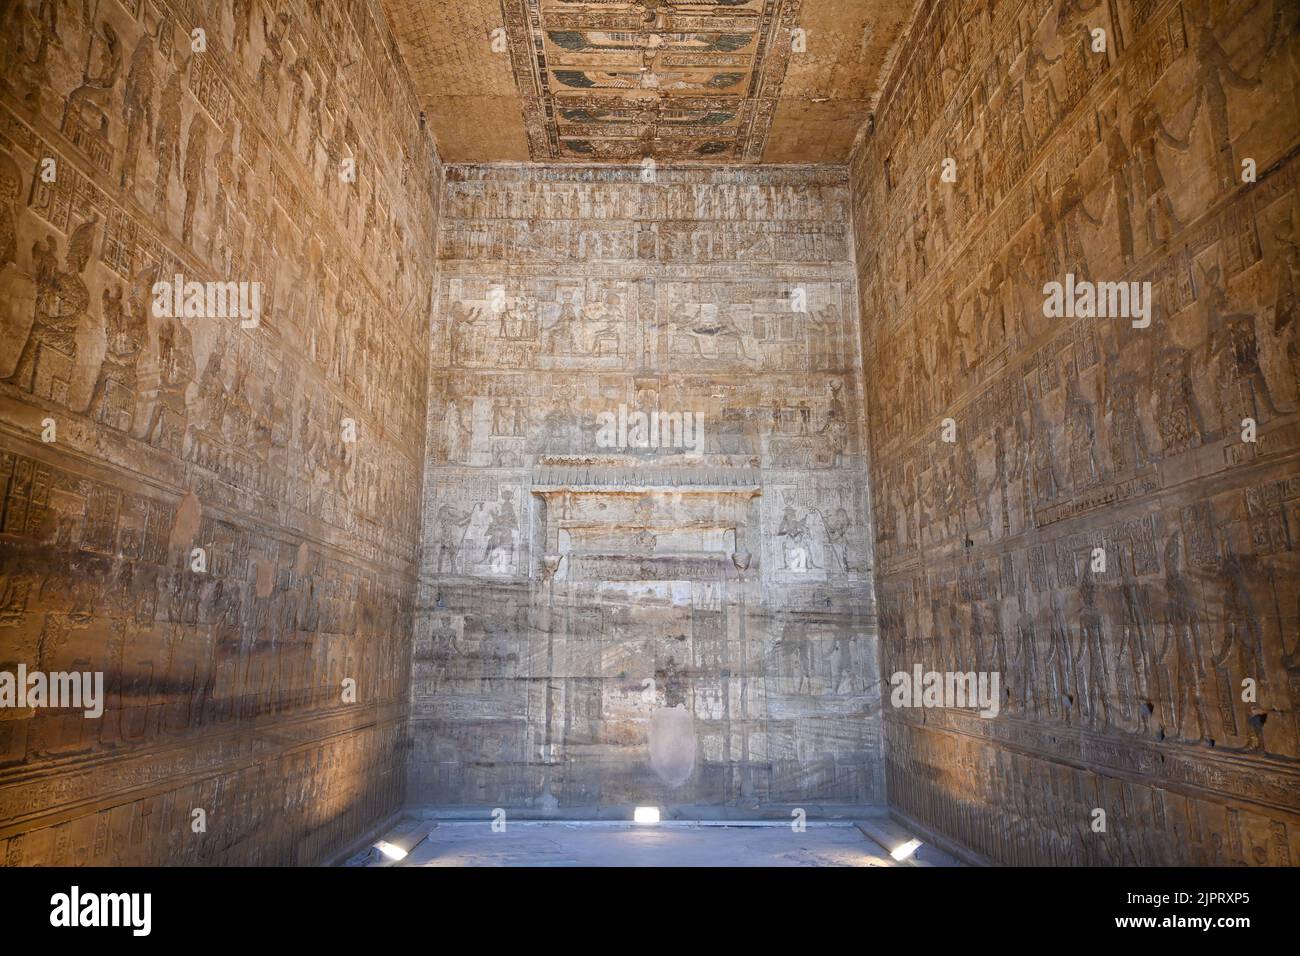 Intenraum, Geburtstempel Mamisi der Göttin Hathor, Hathor-Tempel, Dendera, Qina, Ägitten Banque D'Images